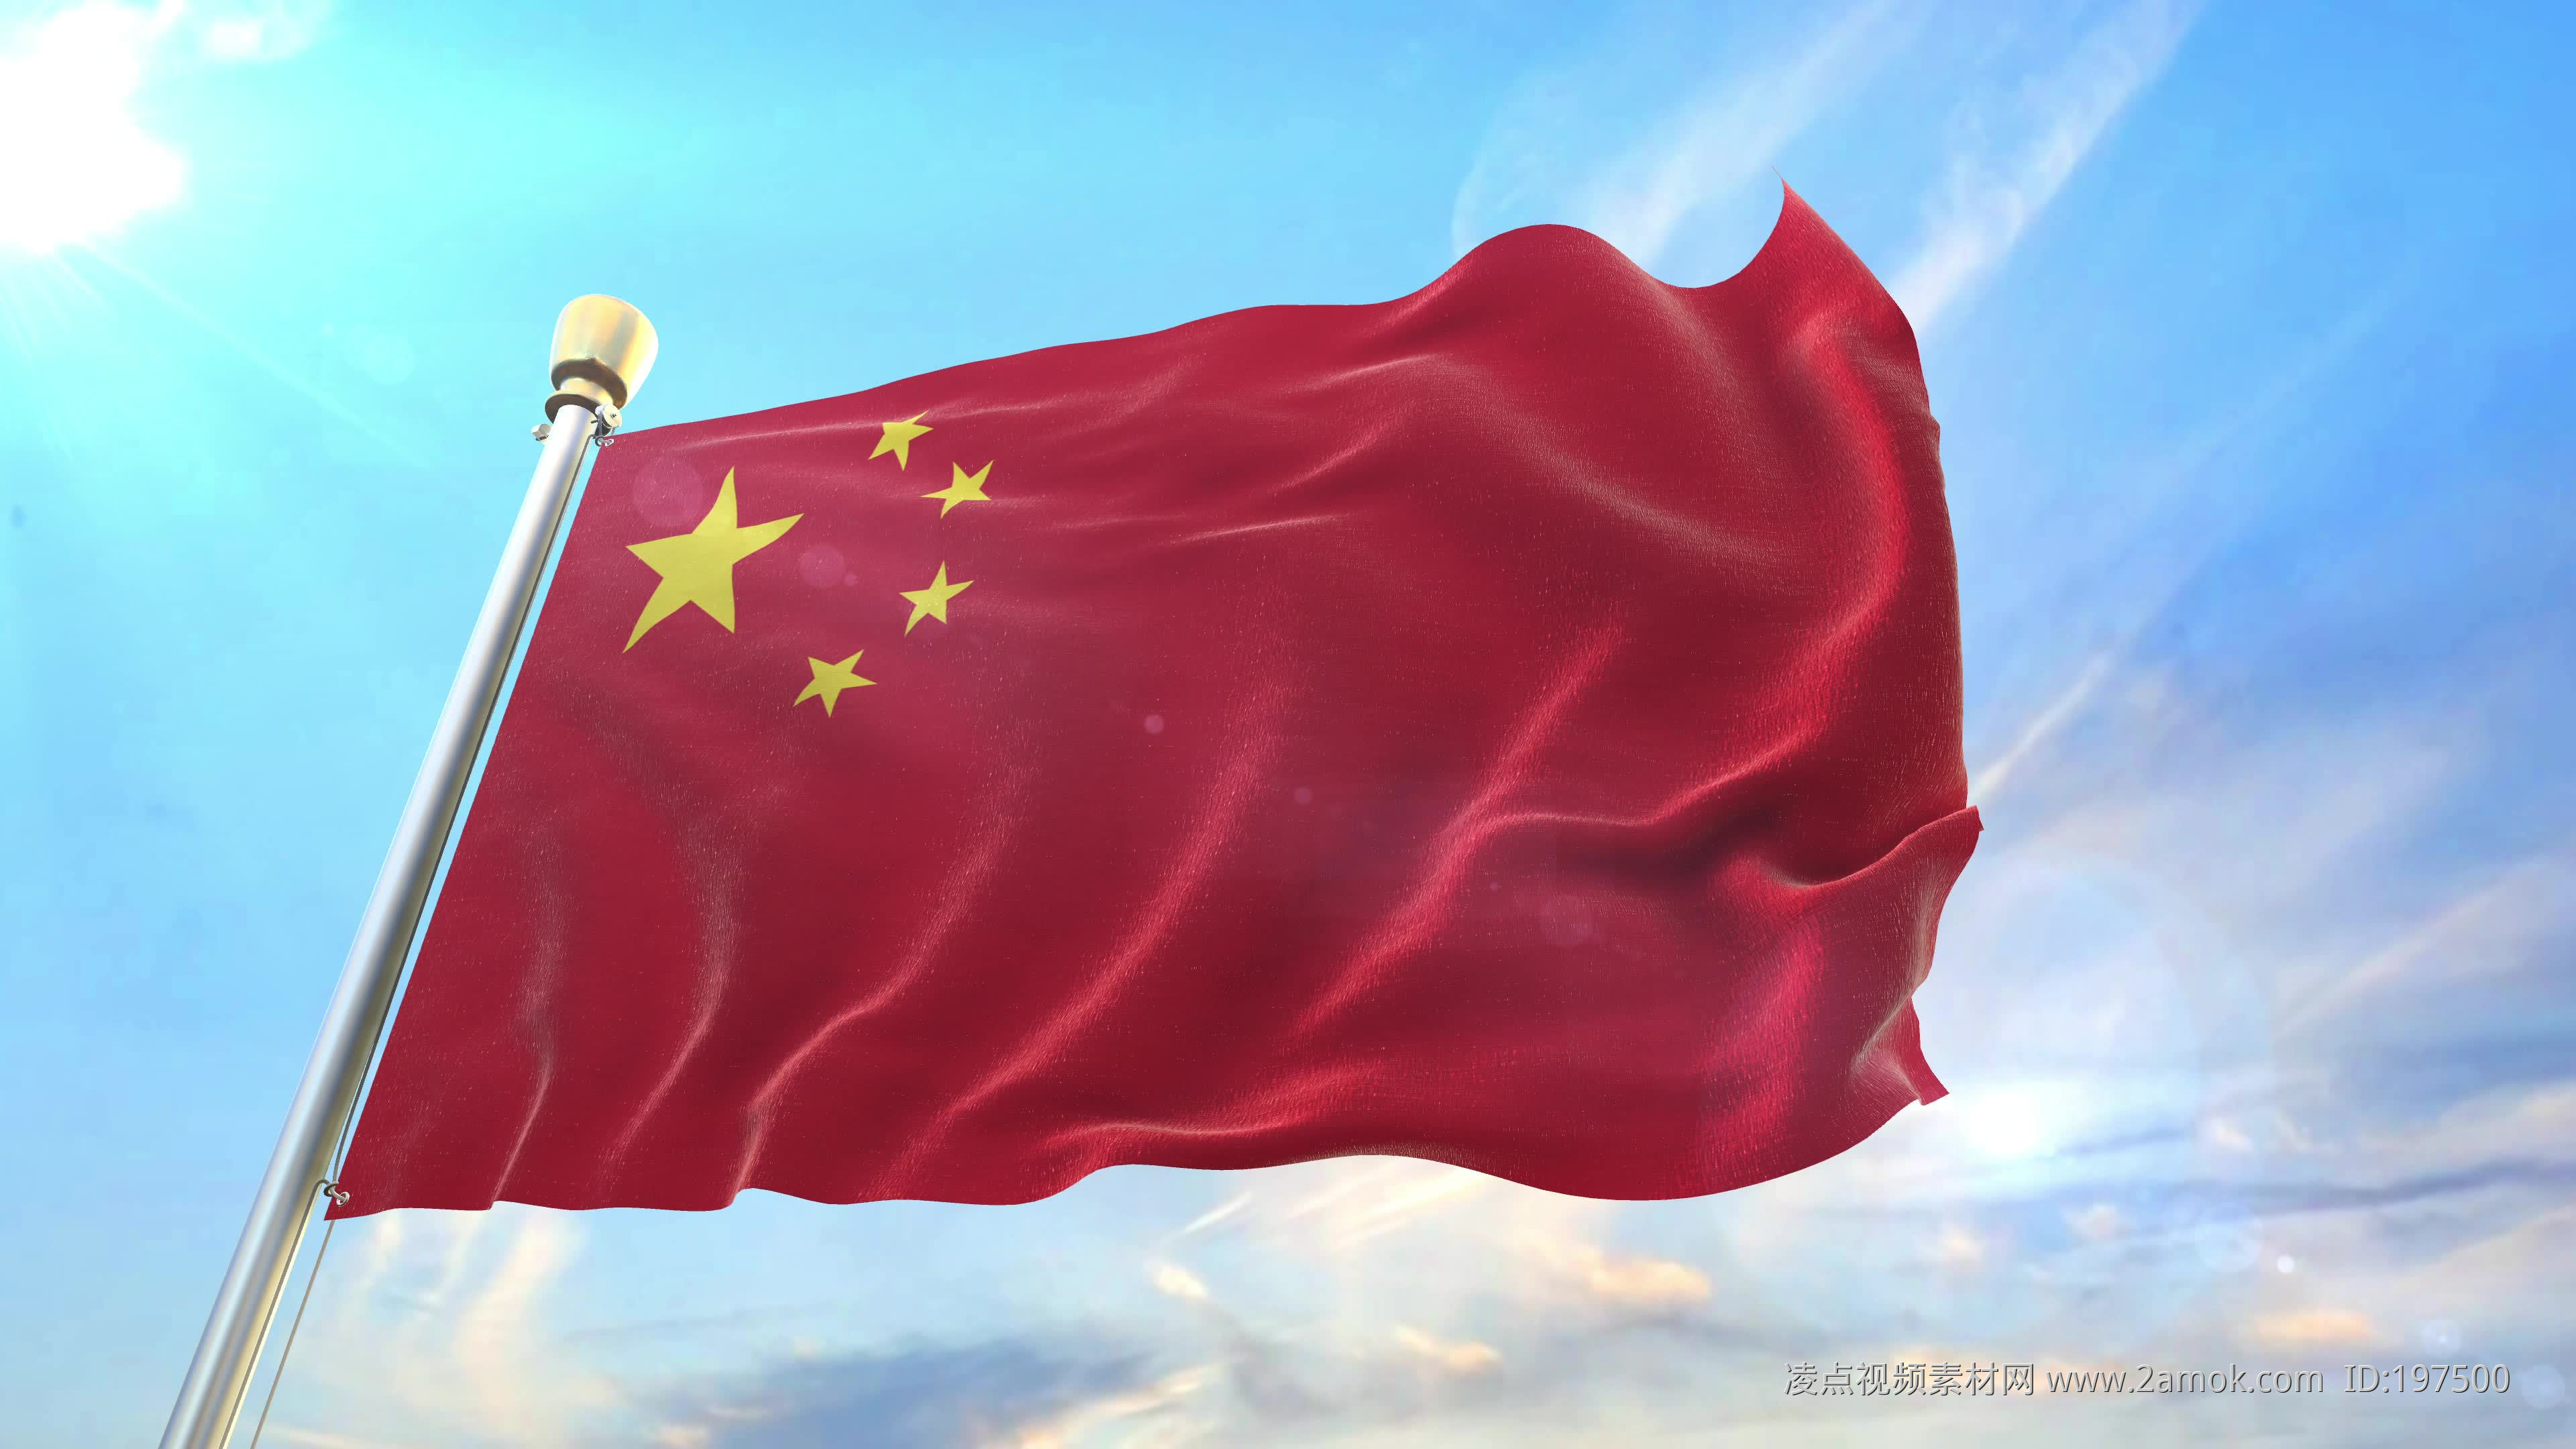 中国国旗 - 素材公社 tooopen.com